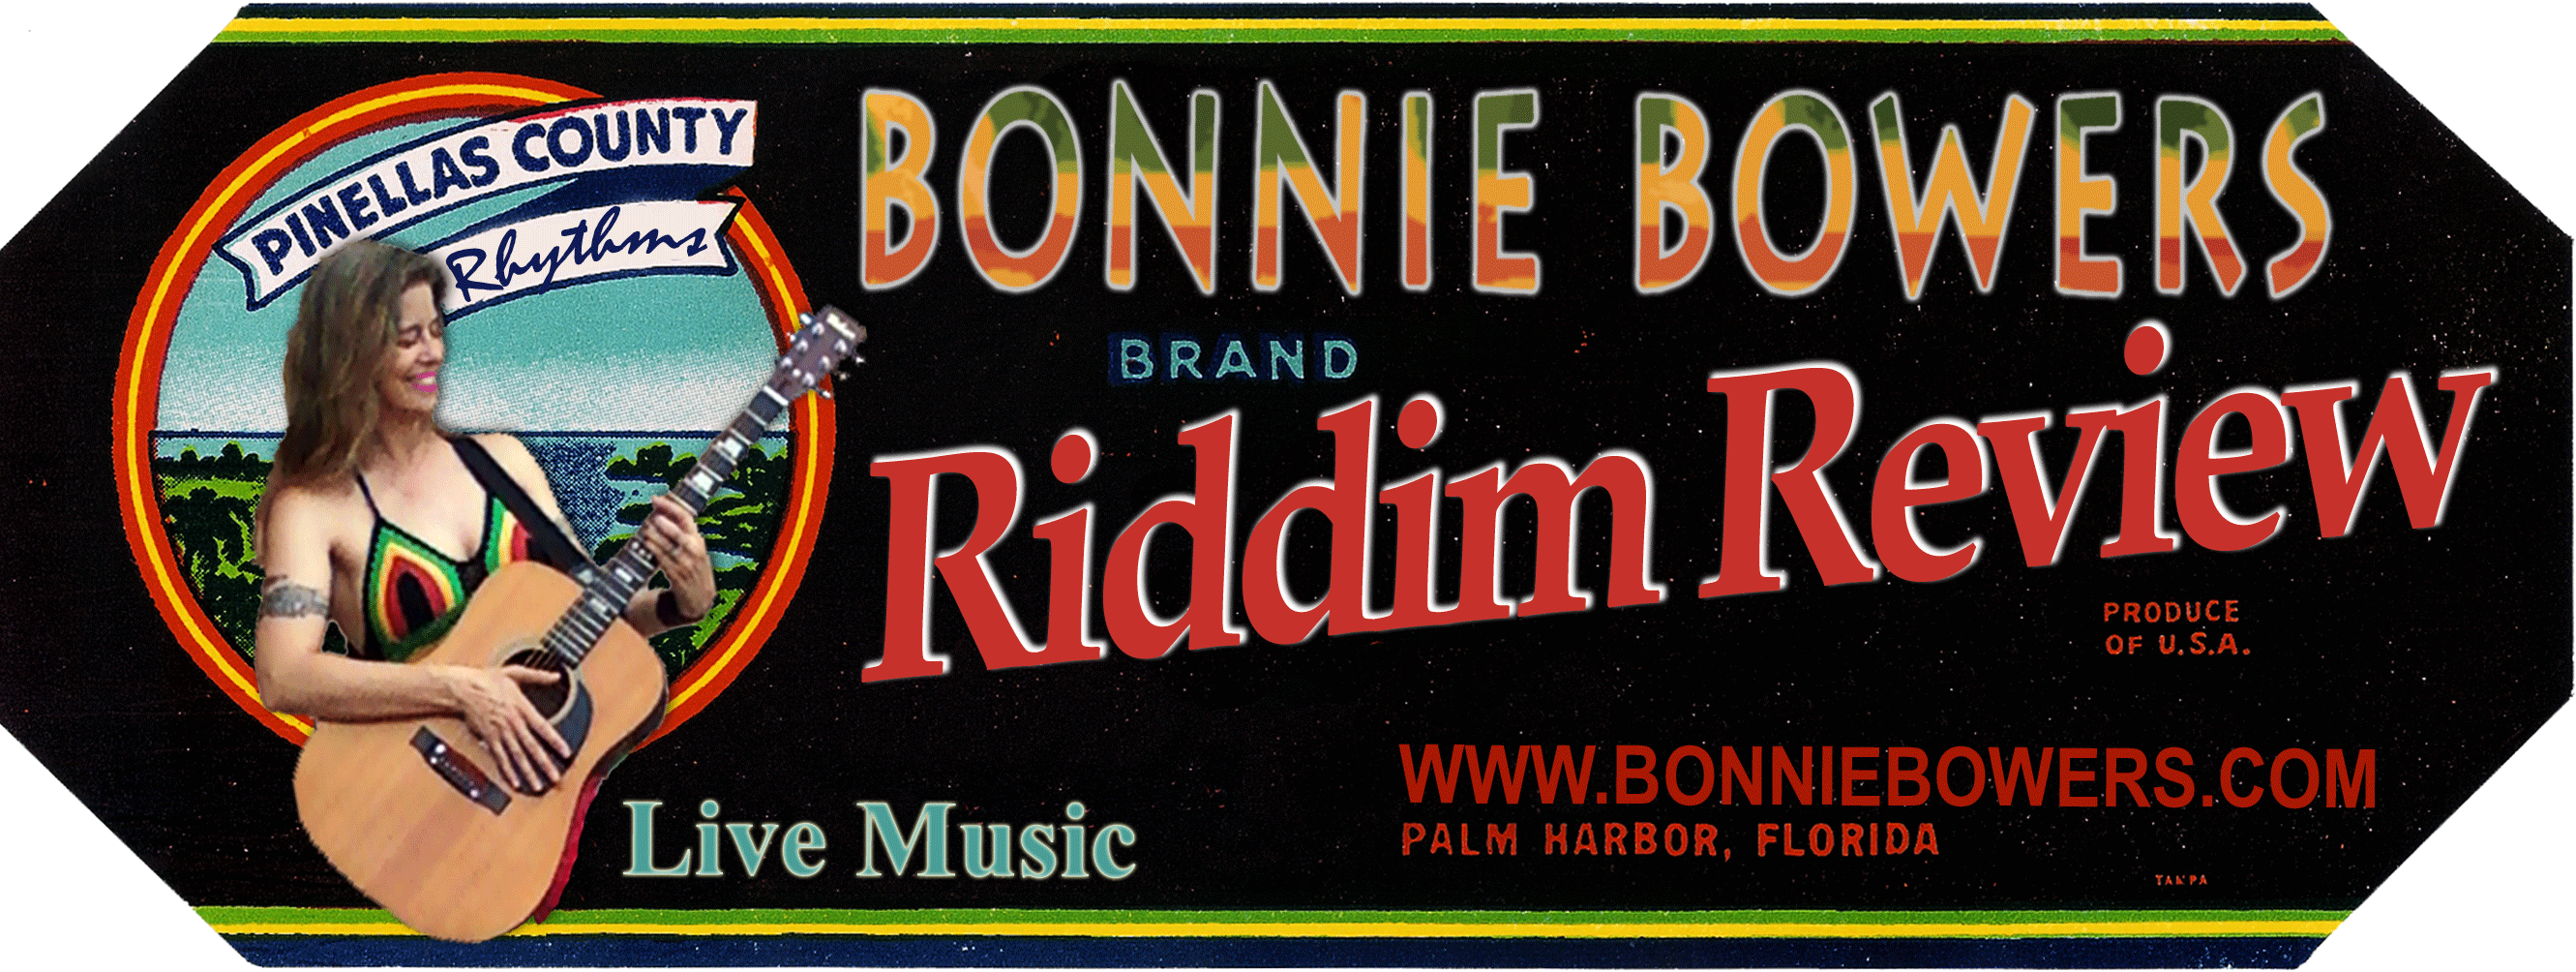 Bonnie Bowers Riddim Review